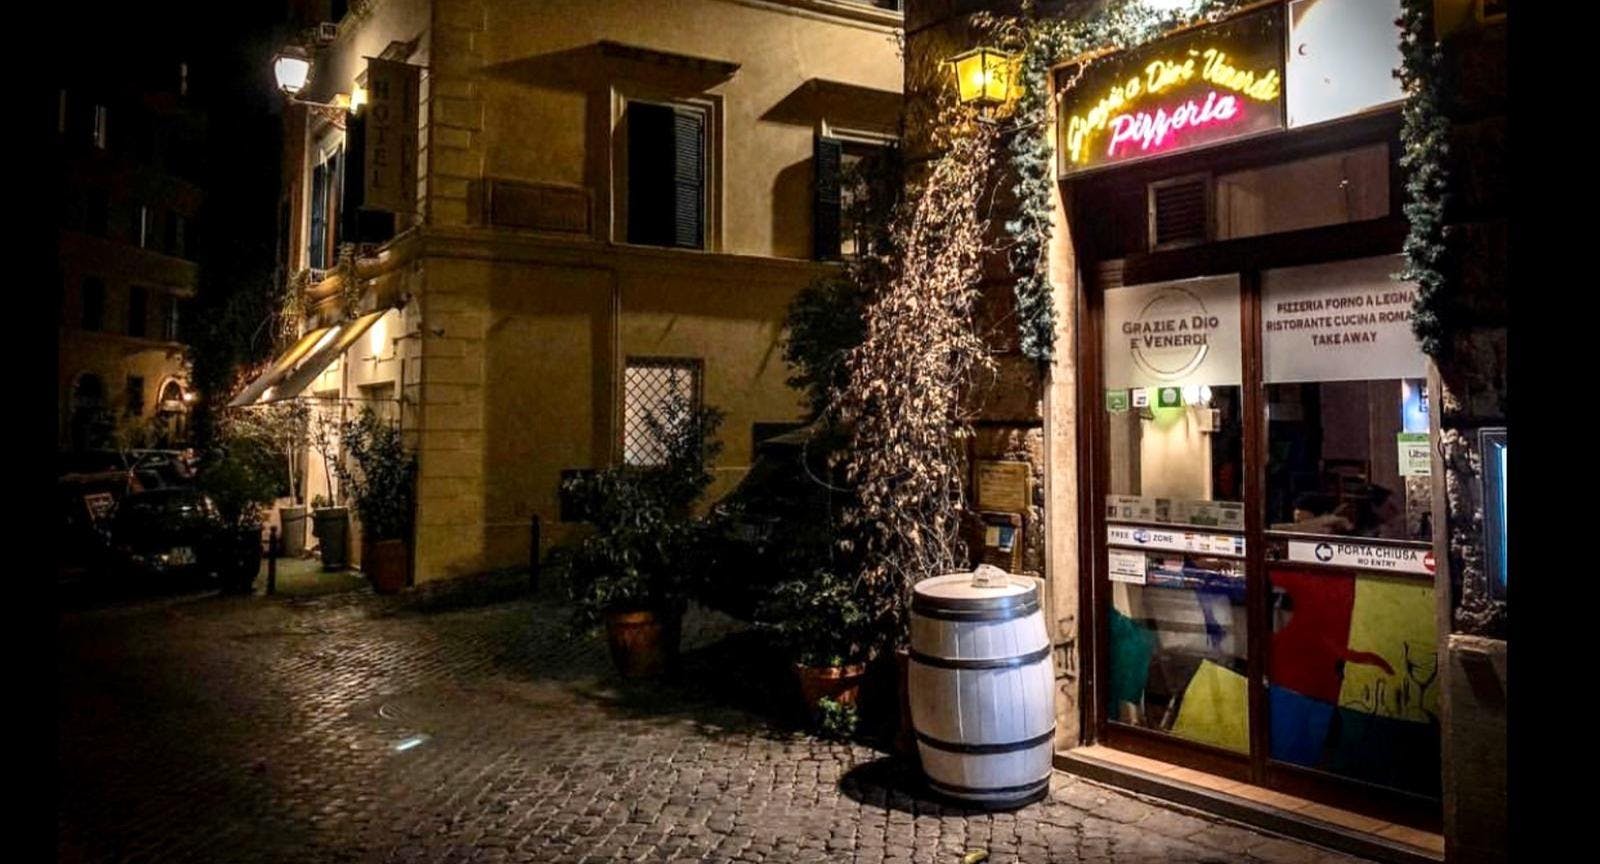 Photo of restaurant Grazie a Dio è Venerdi in Monti, Rome